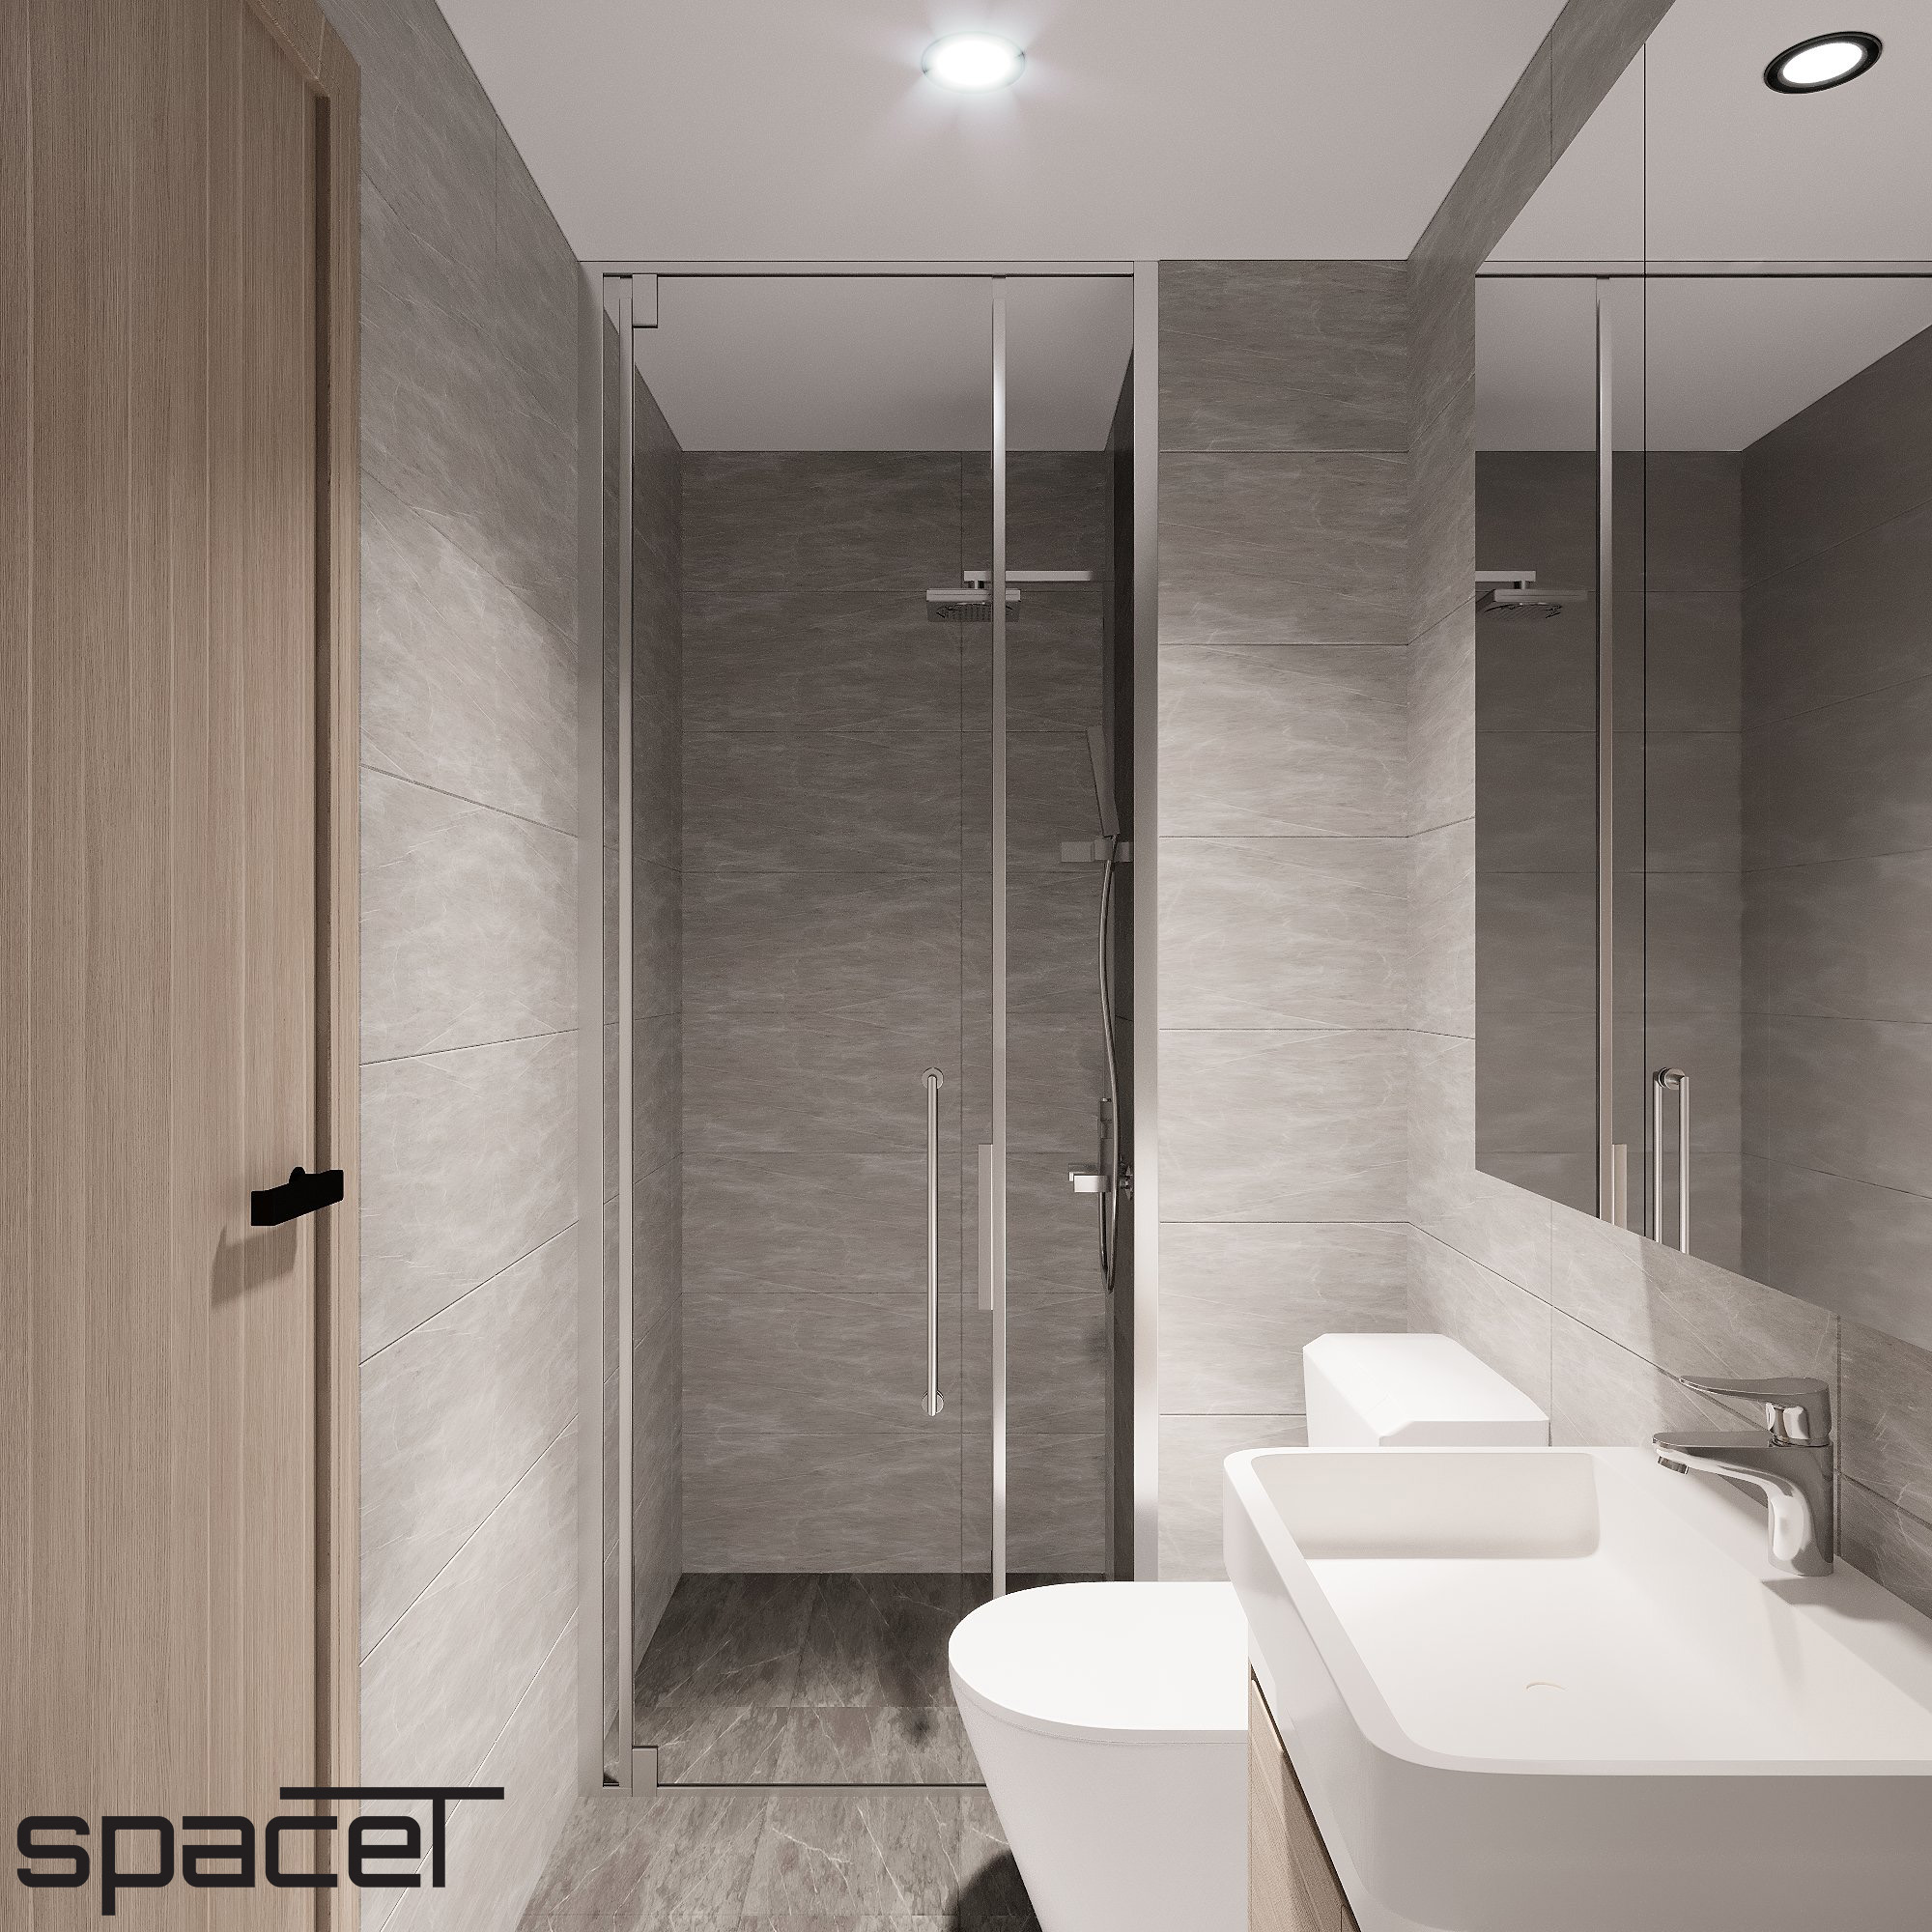 Phòng tắm, phong cách Hiện đại Modern, thiết kế concept nội thất, căn hộ The Origami Vinhomes Grand Park